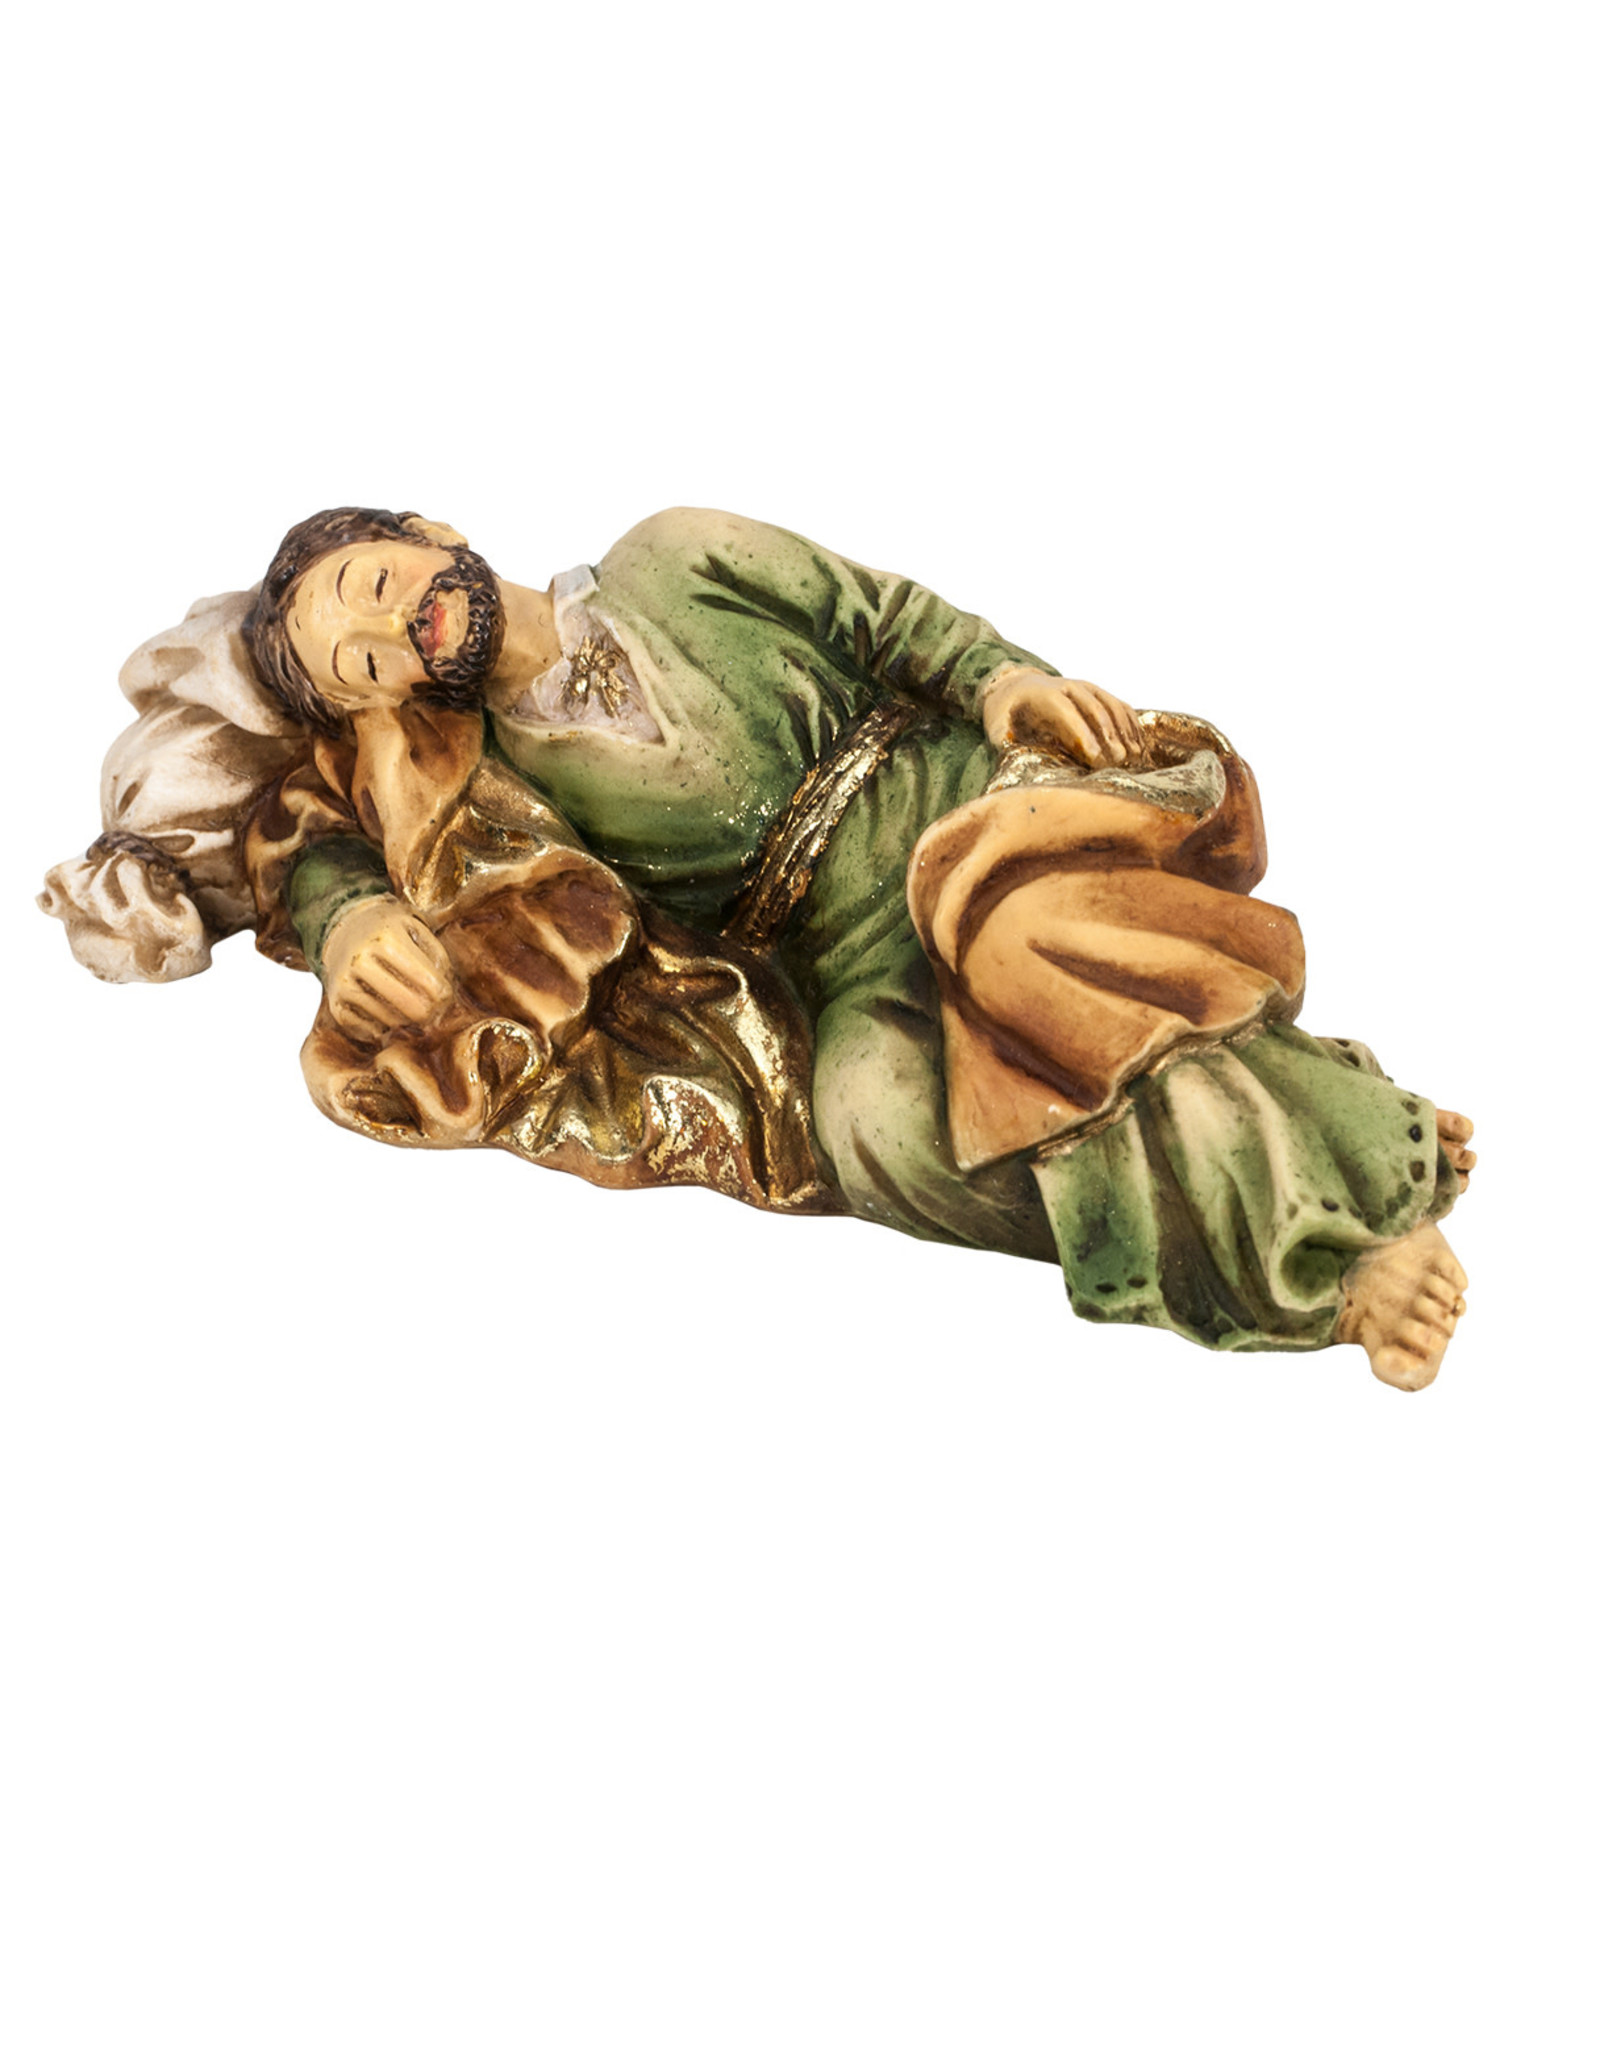 Hirten Patron Saint Statue - Sleeping St. Joseph